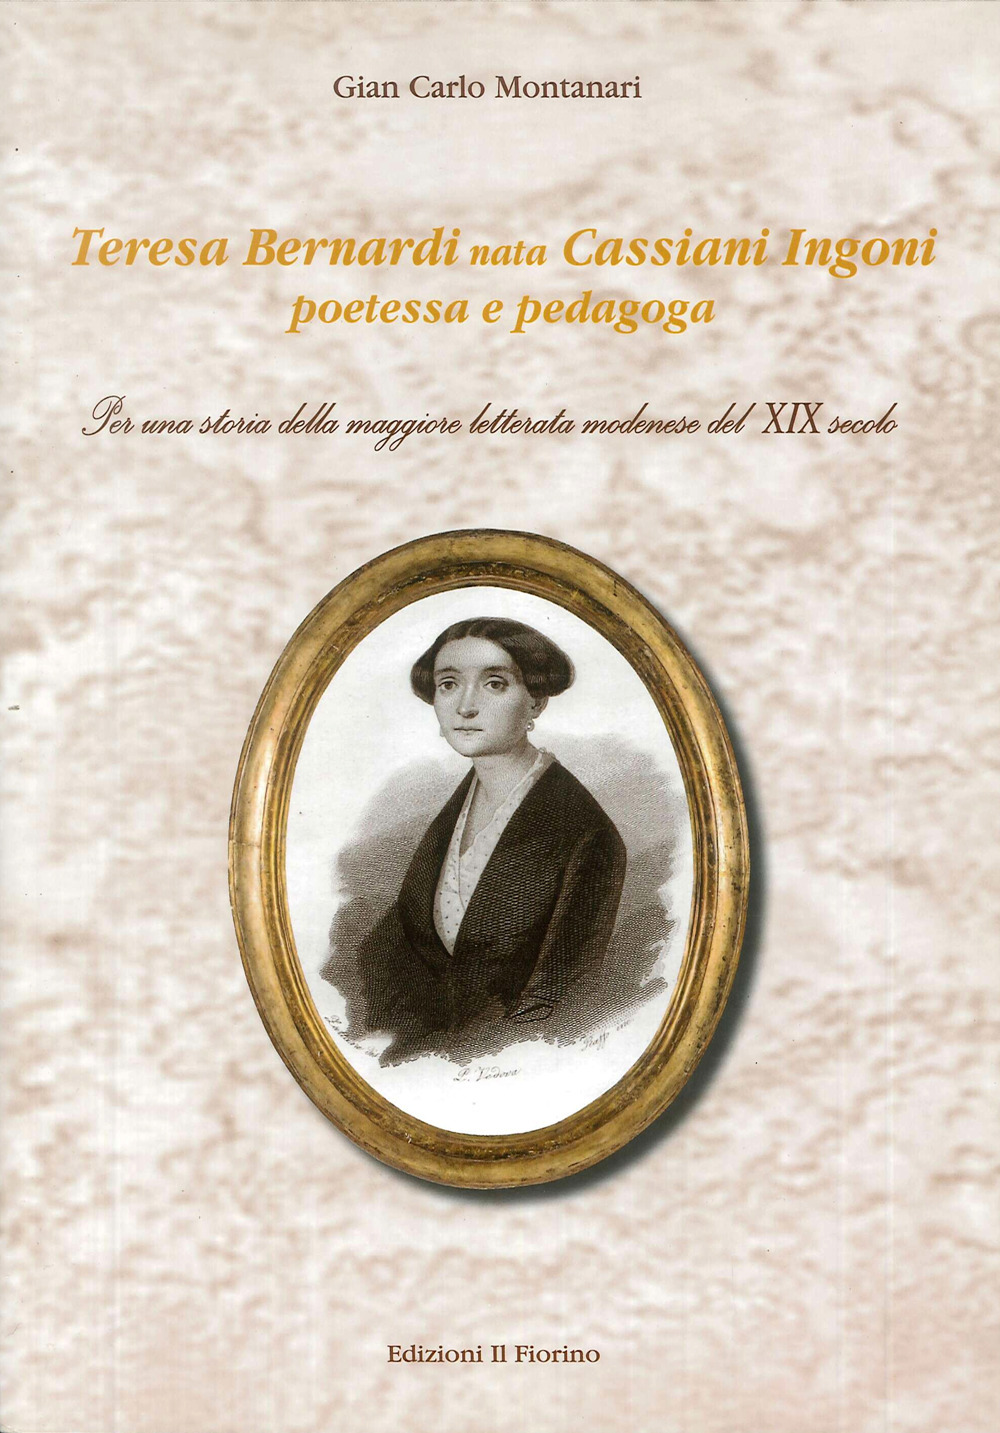 Teresa Bernardi nata Cassiani Ingoni poetessa e pedagoga. Per una storia della maggiore letterata modenese del XIX secolo